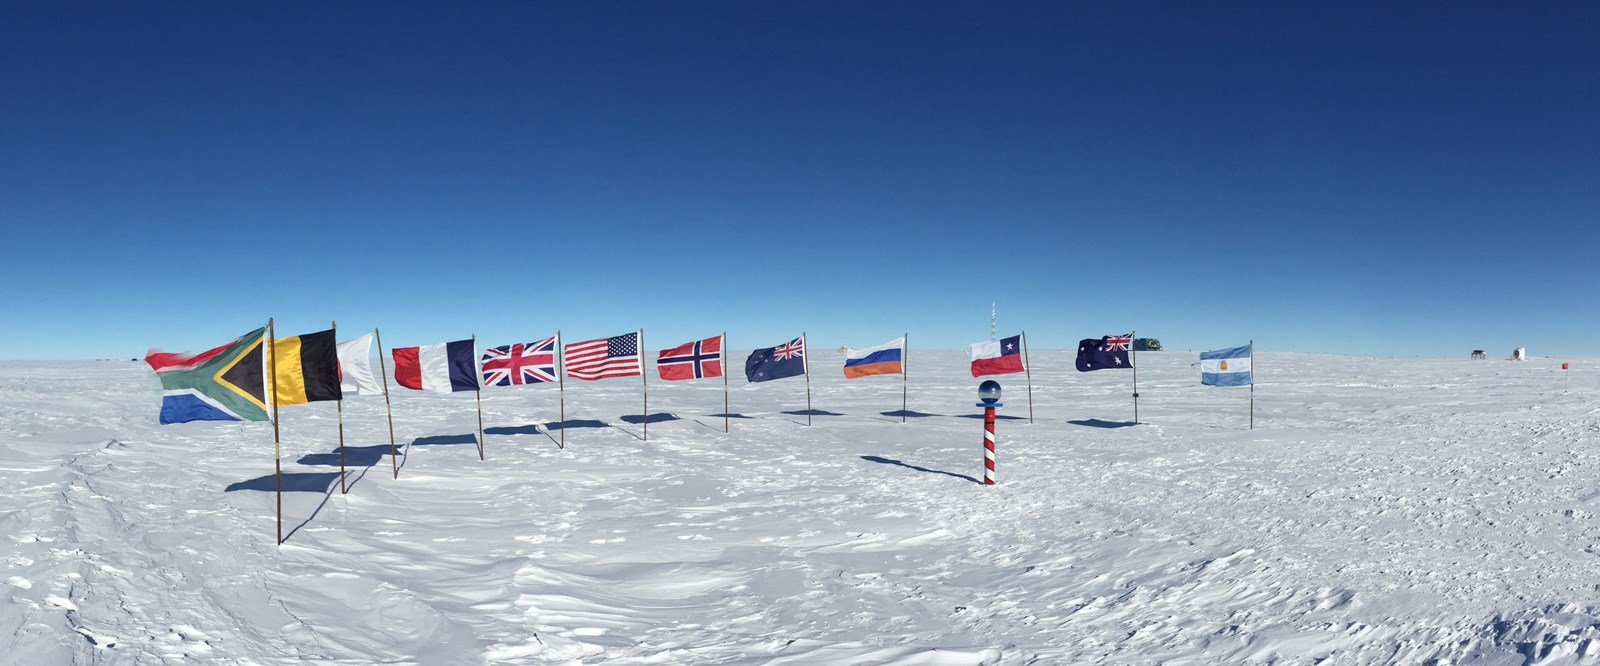 10 incroyables faits sur la vie au pôle Sud